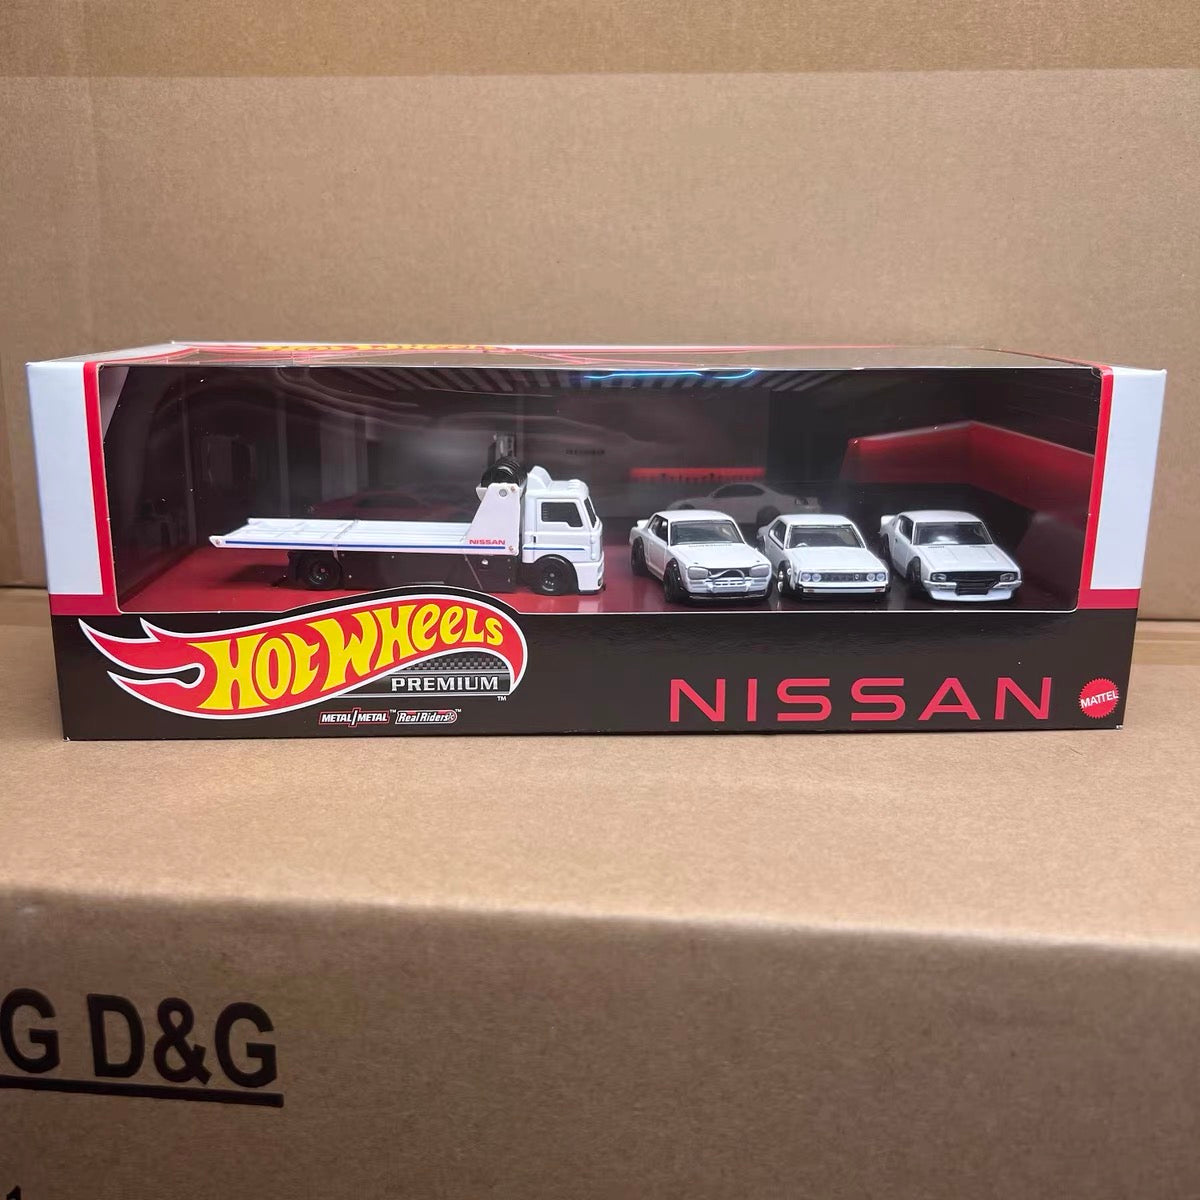 Hotwheels Premium 1:64 Scale Nissan Truck Set Diecast